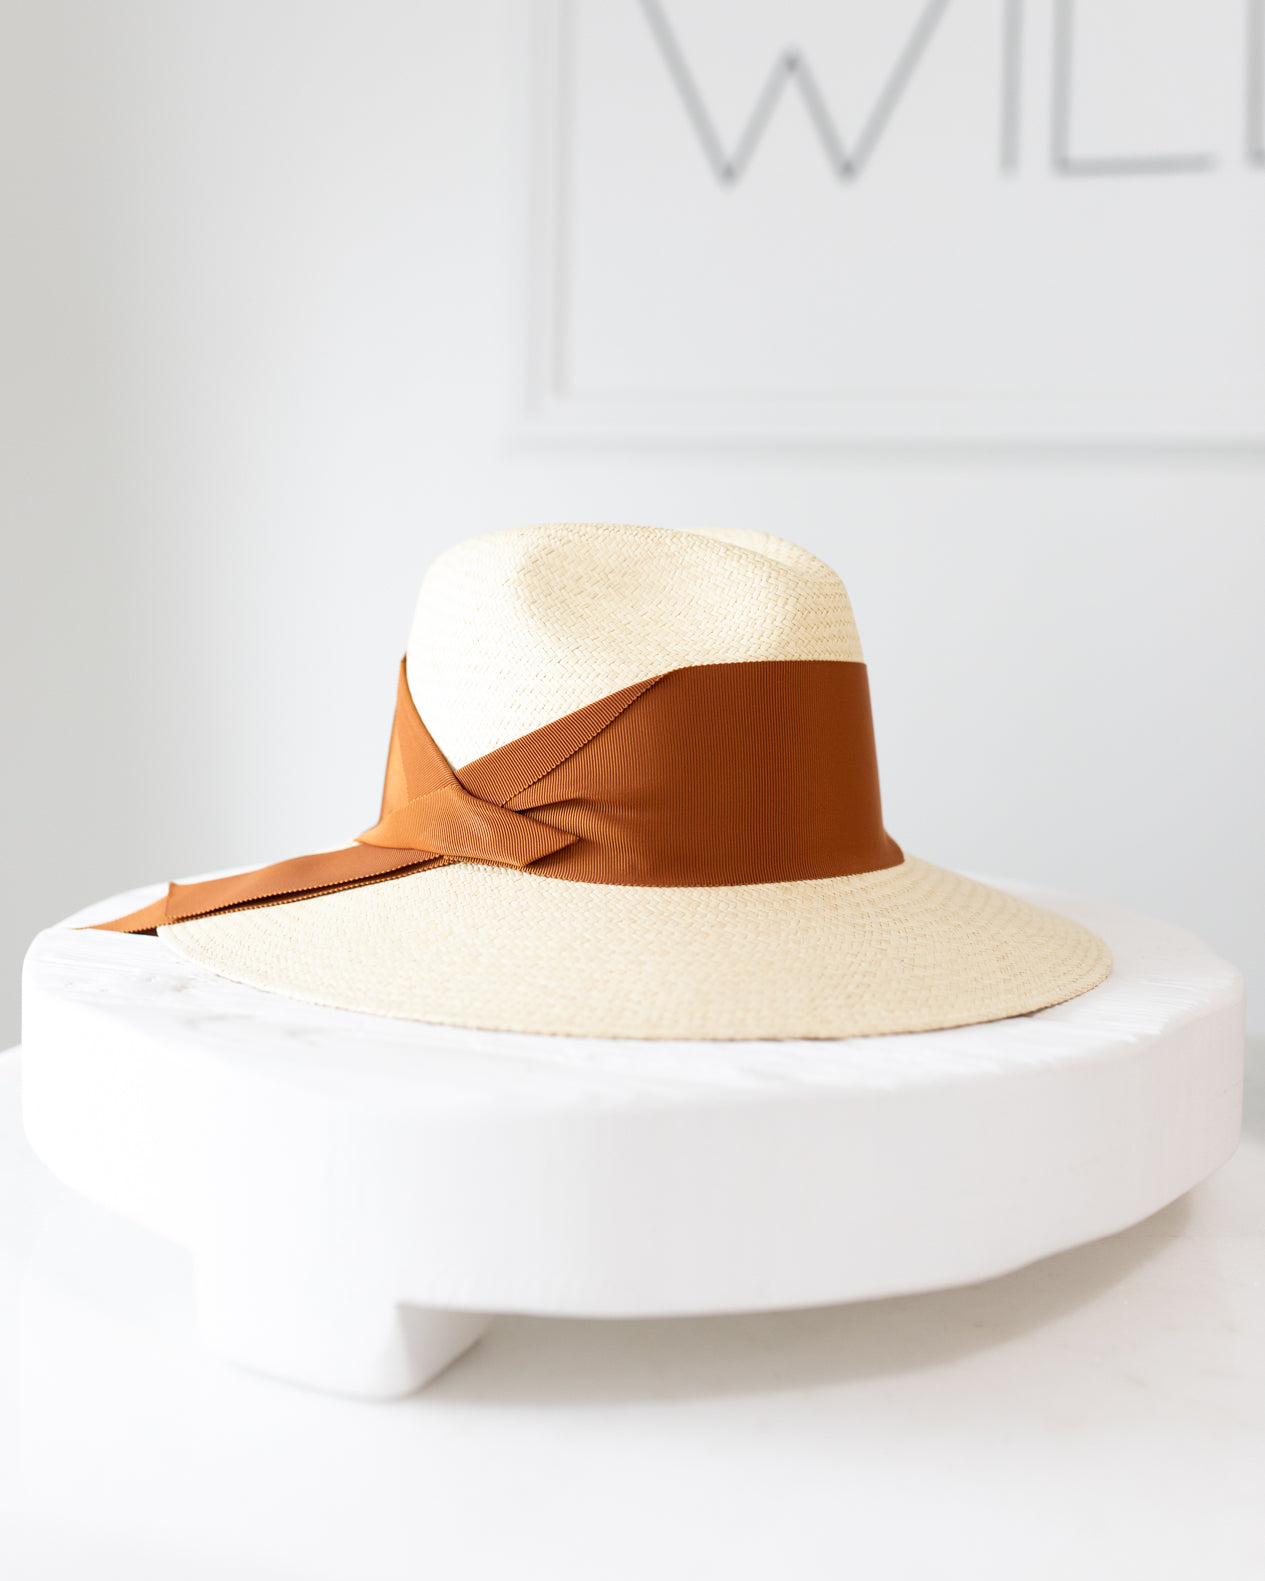 Freya Gardenia Hat in Natural and Honey